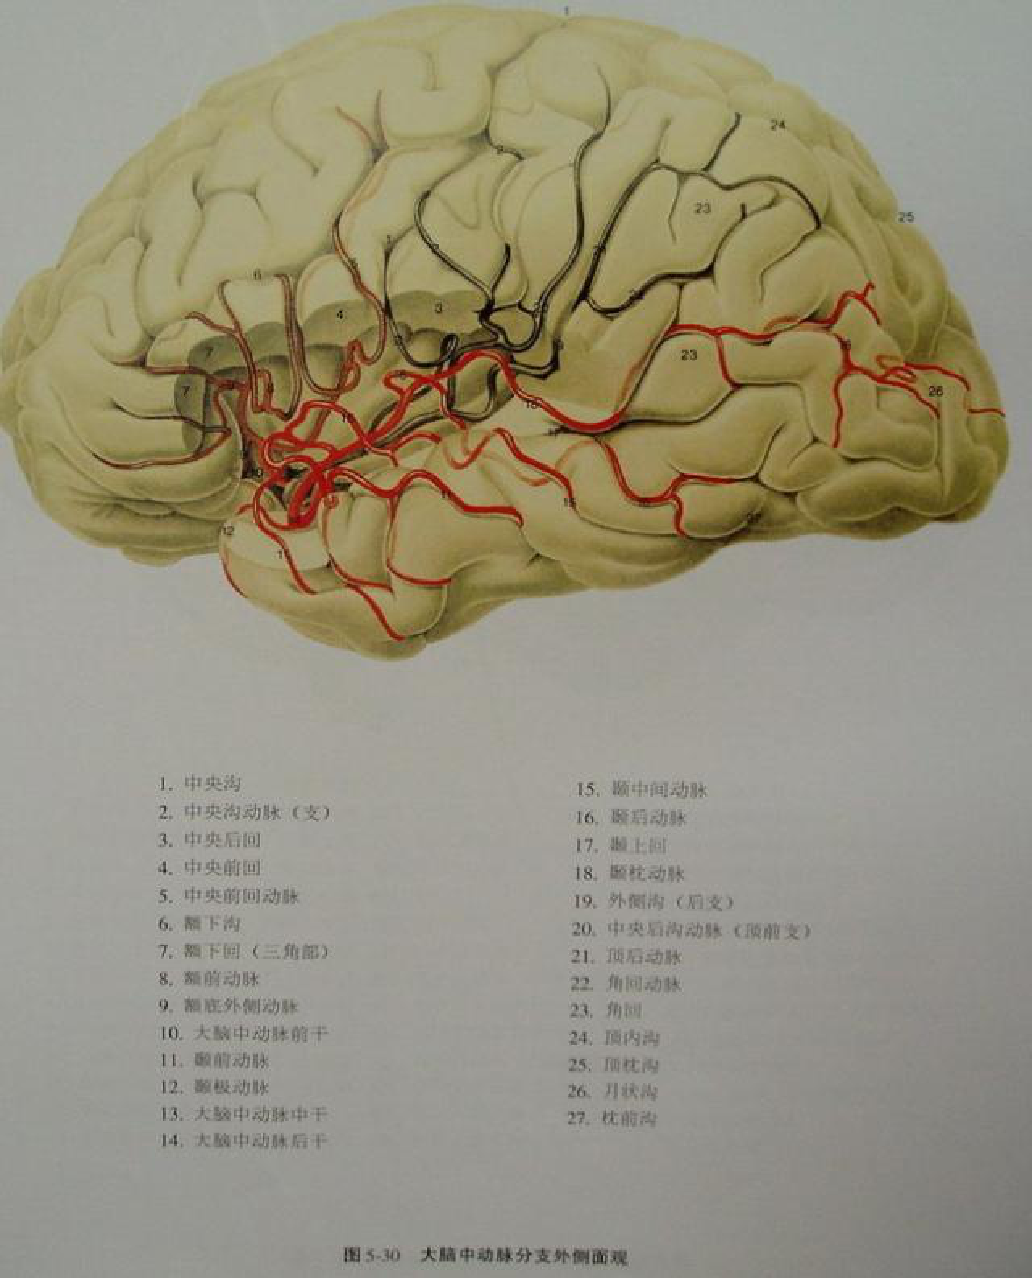 脑血管解剖与影像检查